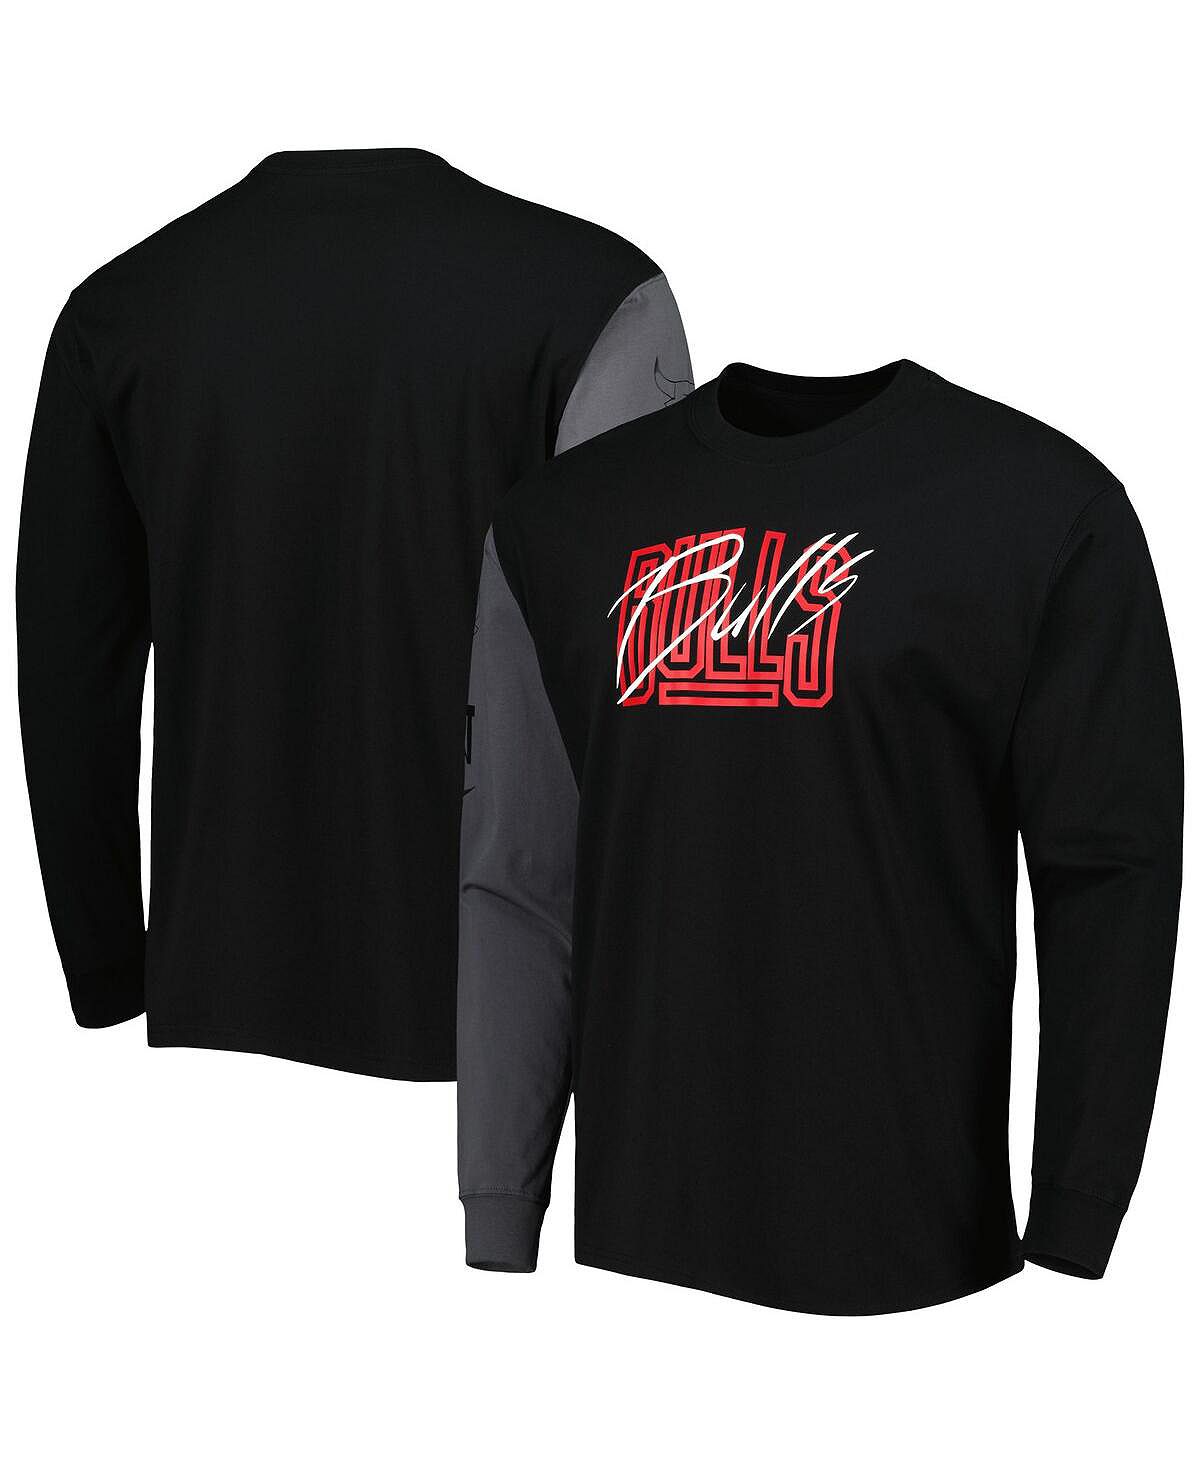 Мужская черная футболка с длинным рукавом Chicago Bulls Courtside Versus Flight MAX90 Nike